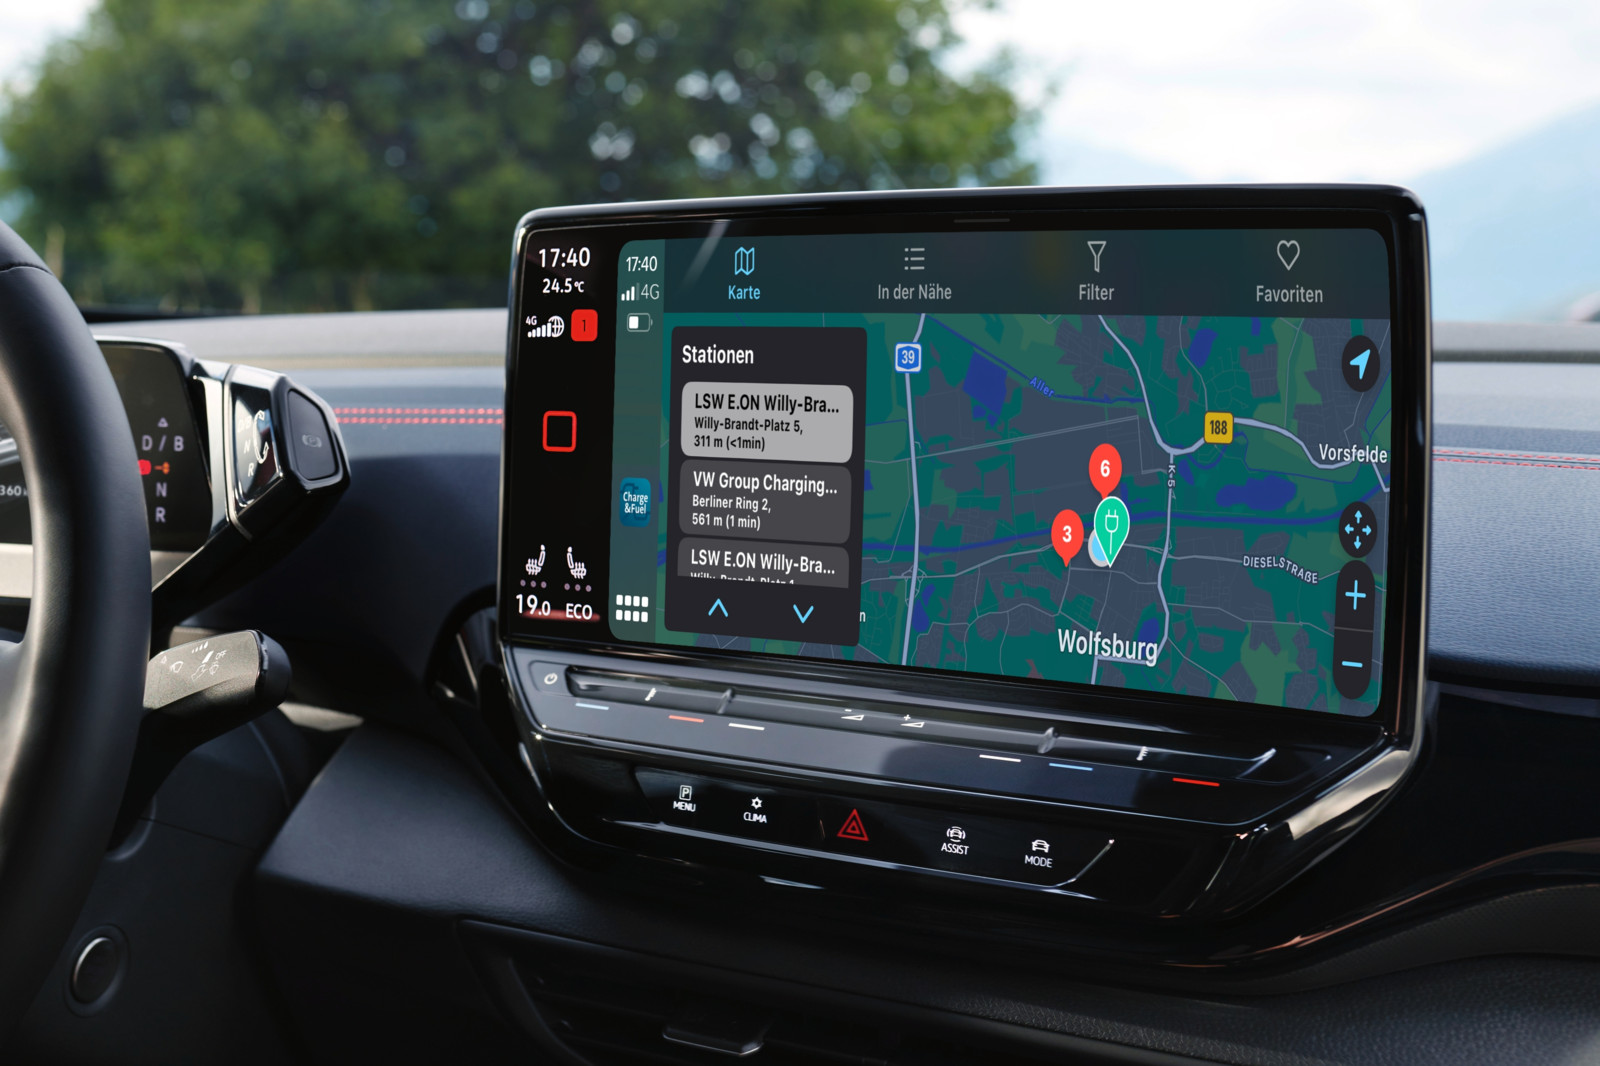 In Fahrzeugen, auf deren Infortainmentsystem Apple Carplay funktioniert, kann die Logpay-App integriert werden.